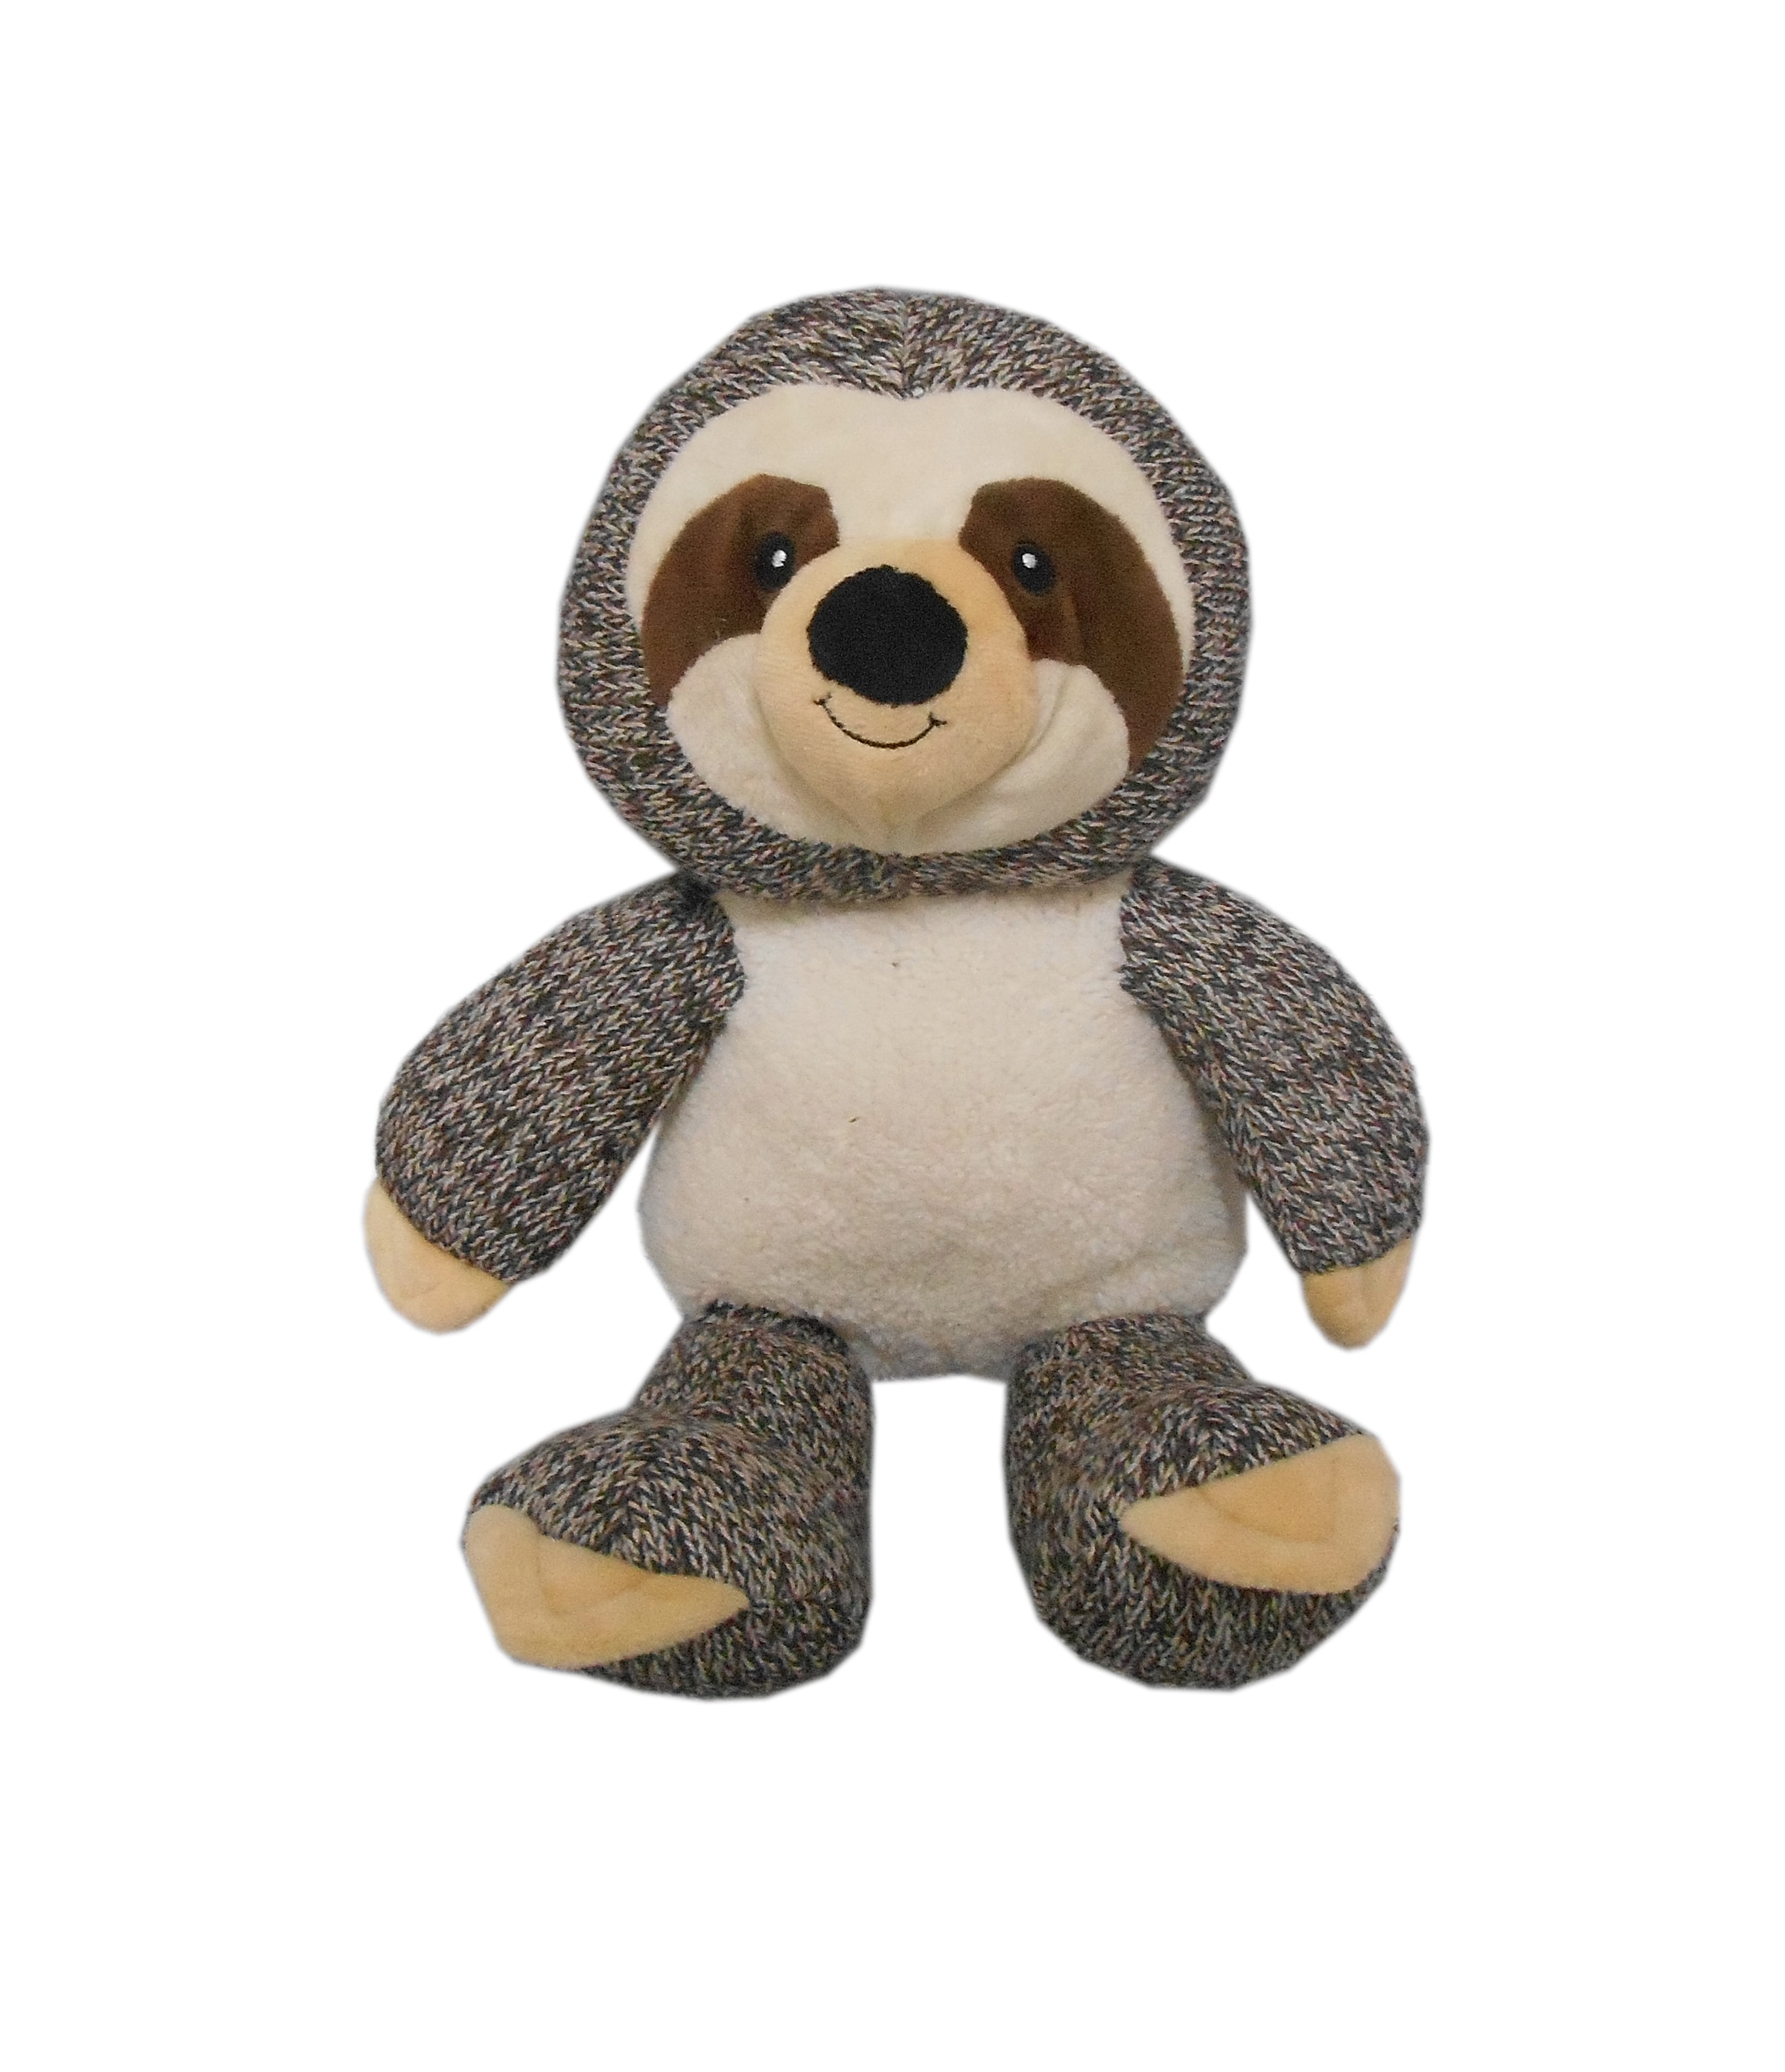 sloth stuffed animal walmart